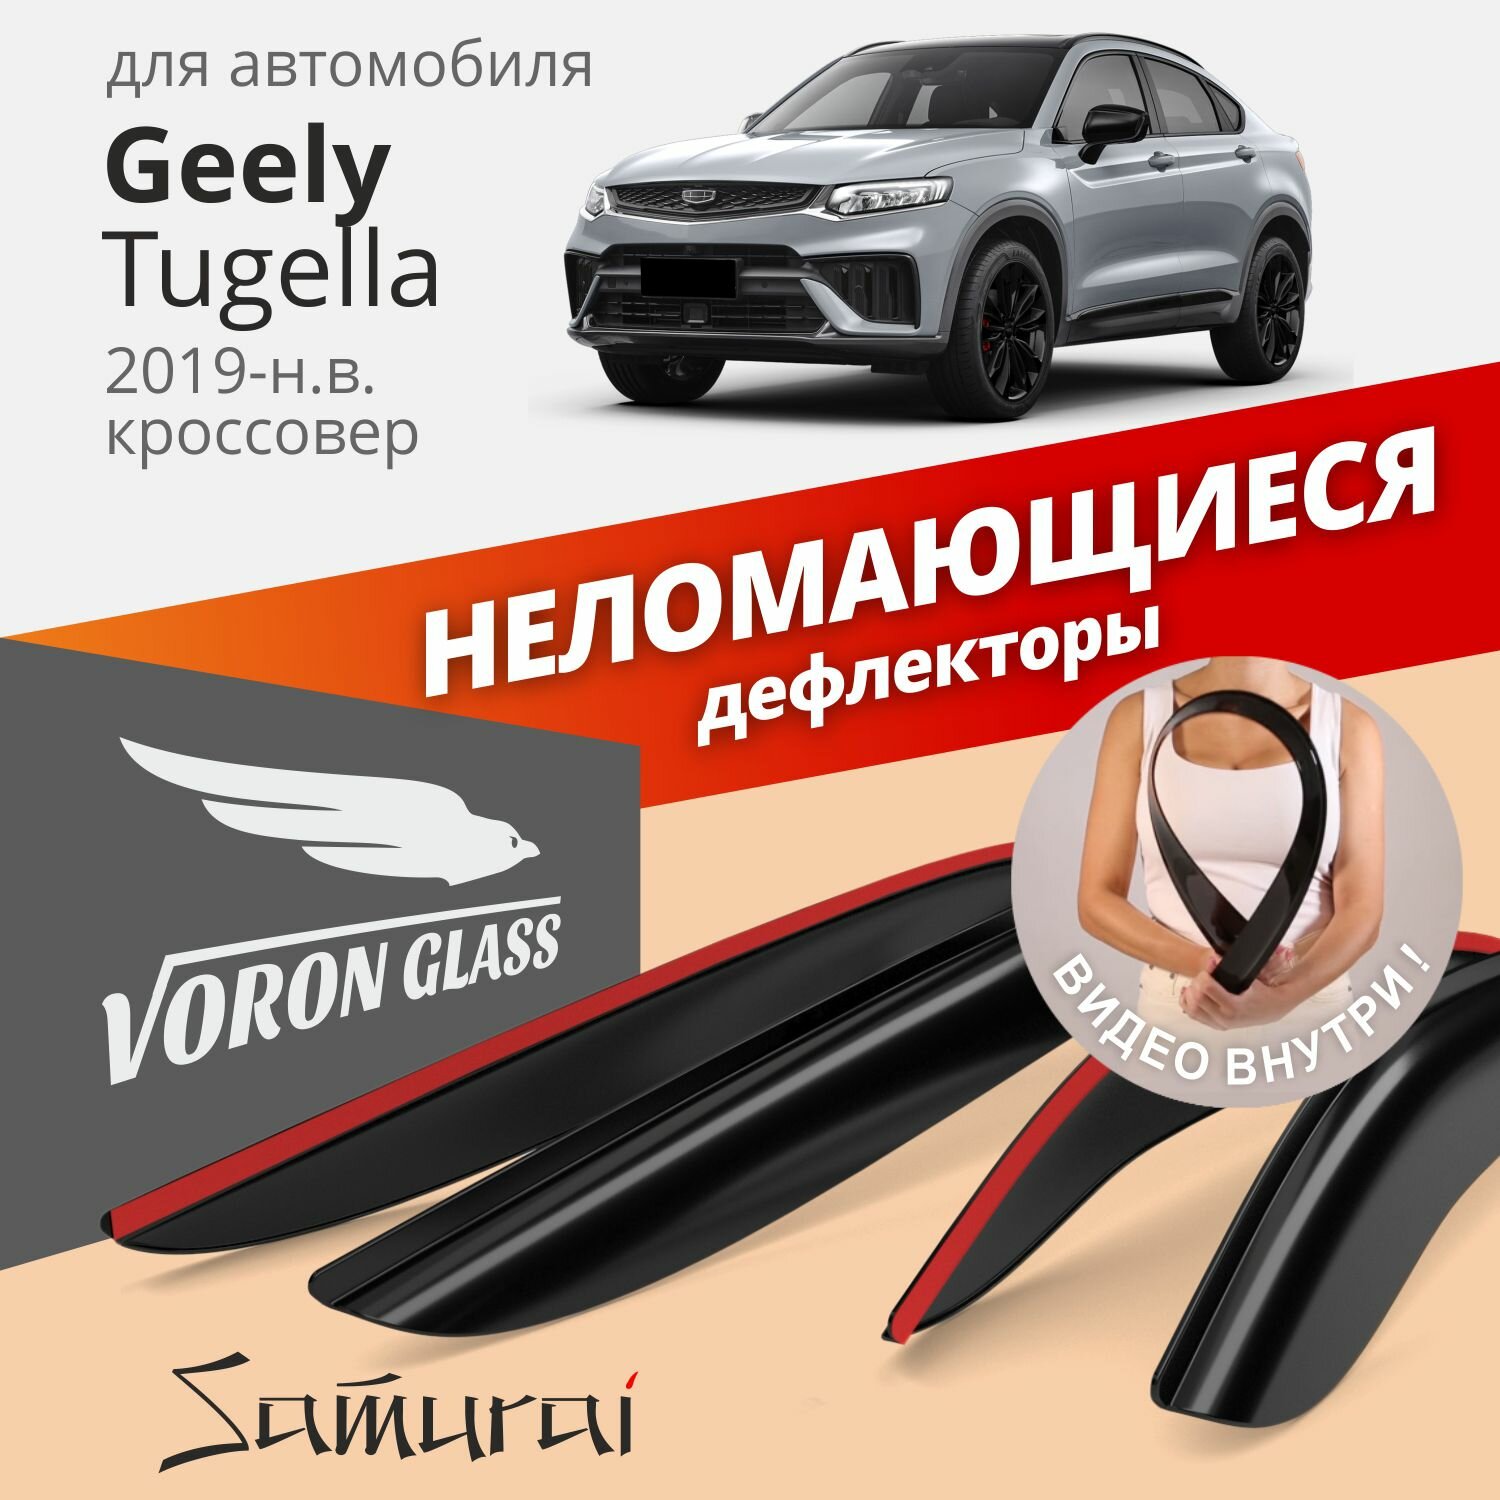 Дефлекторы Voron Glass серия Samurai Geely Tugella 2019-н. в, кроссовер, неломающиеся, 4шт